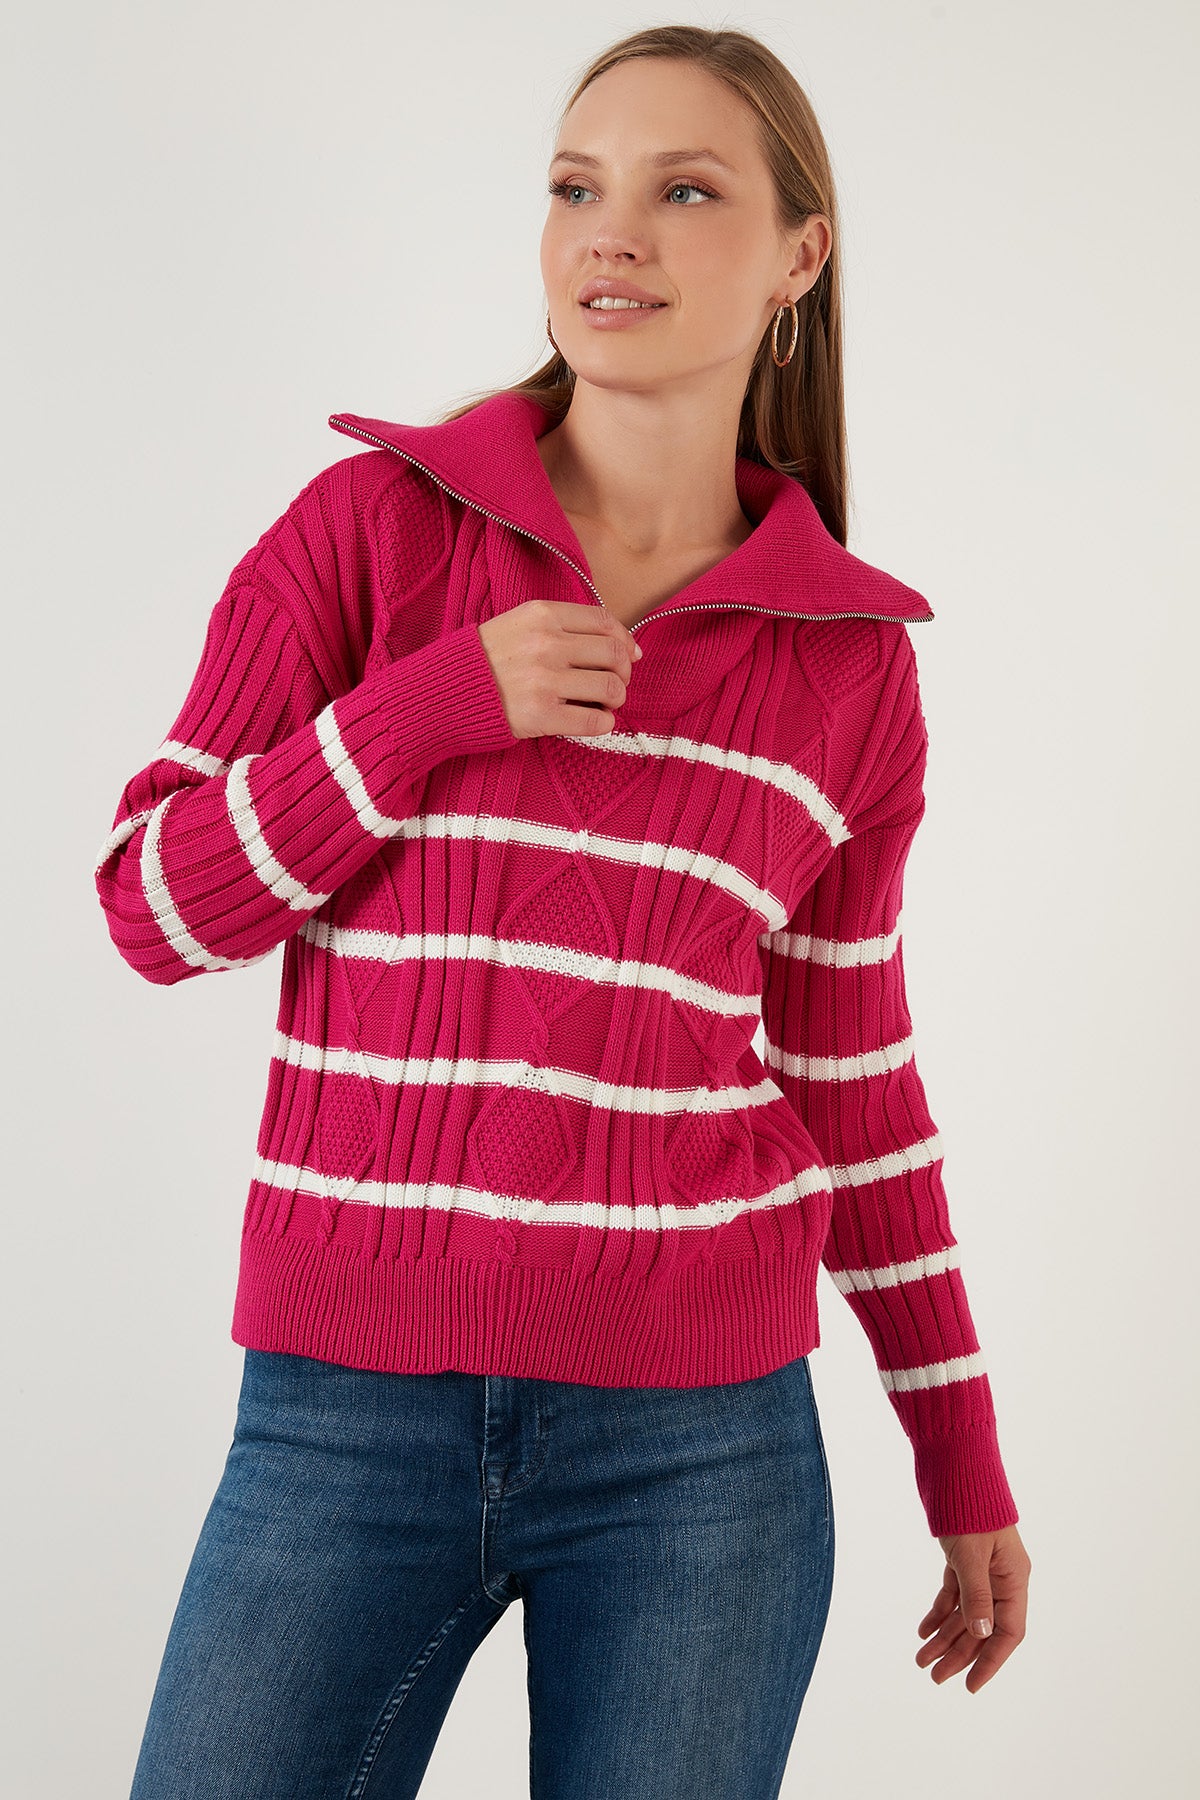 Lela Striped Zippered Turtleneck Knitted Knitwear Women's Sweater - Fuchsia-Ecru